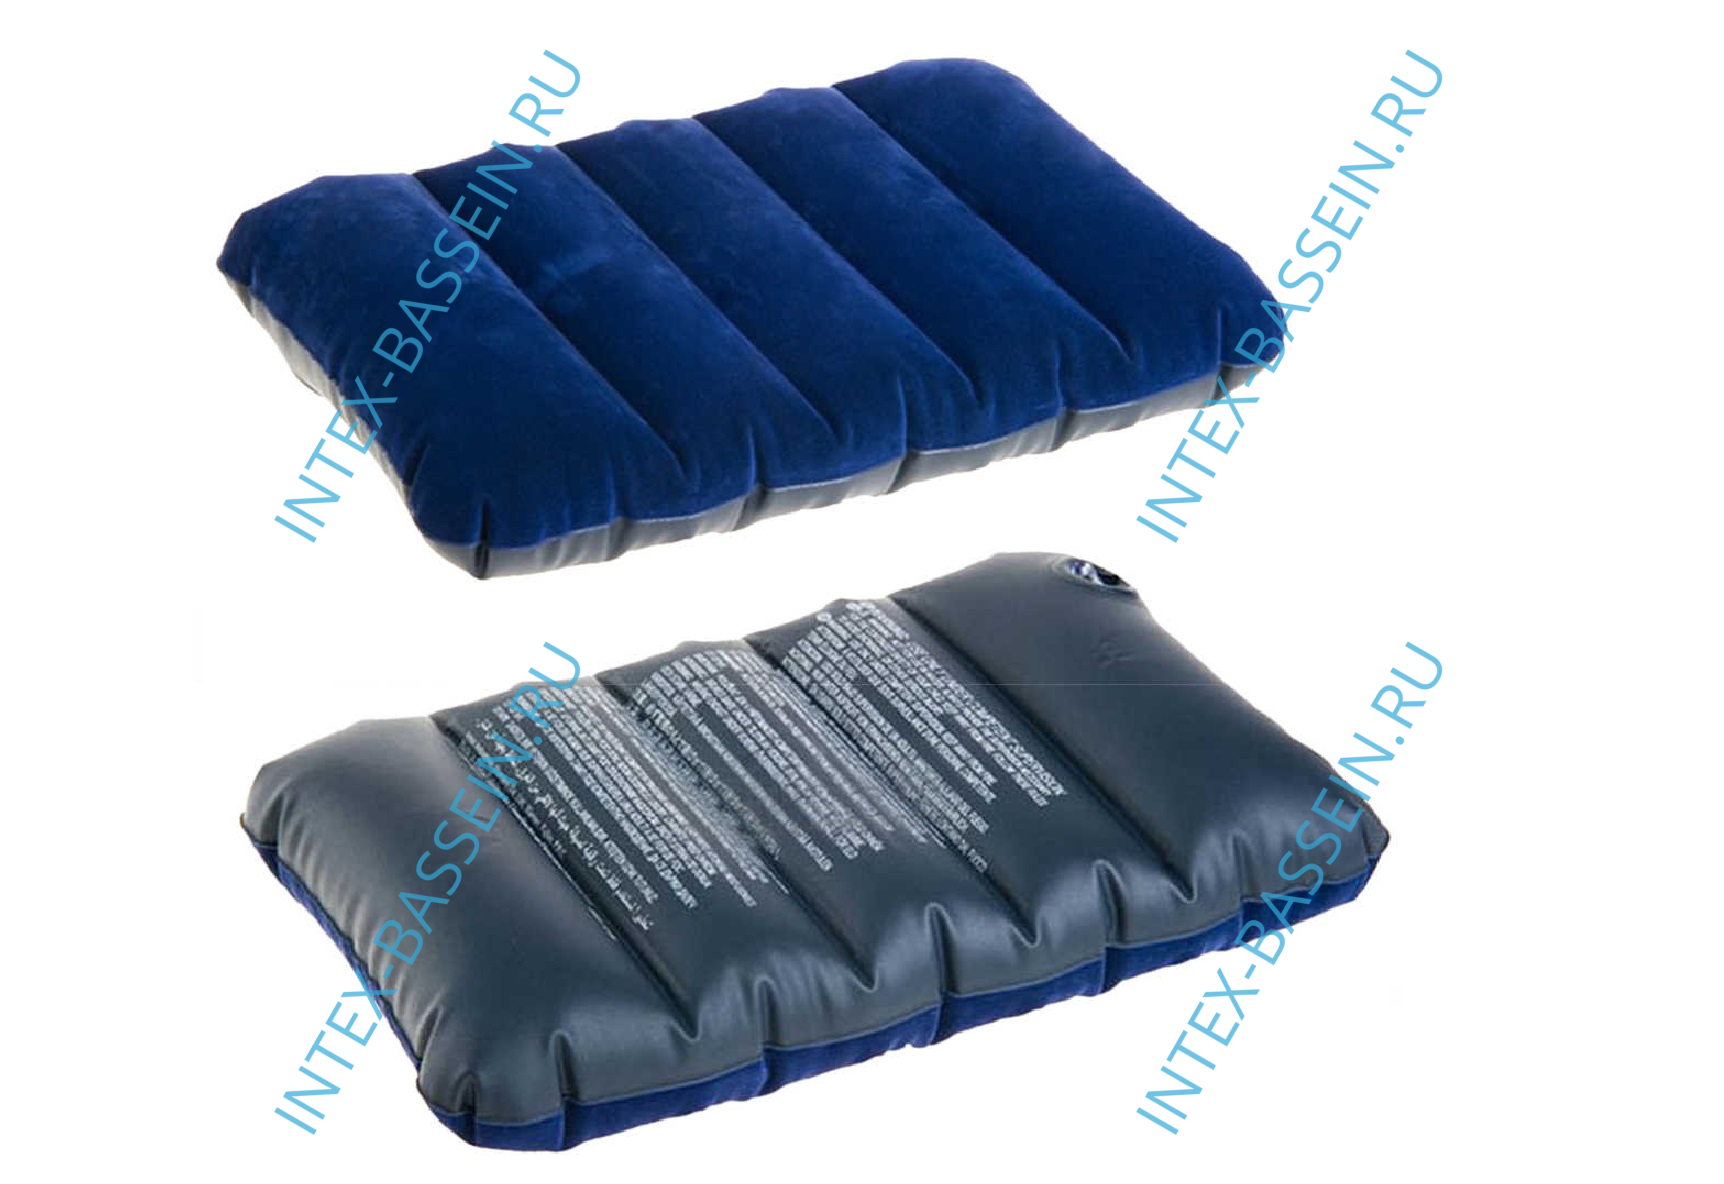 Надувная подушка INTEX 43 x 28 x 9 см, артикул 68672